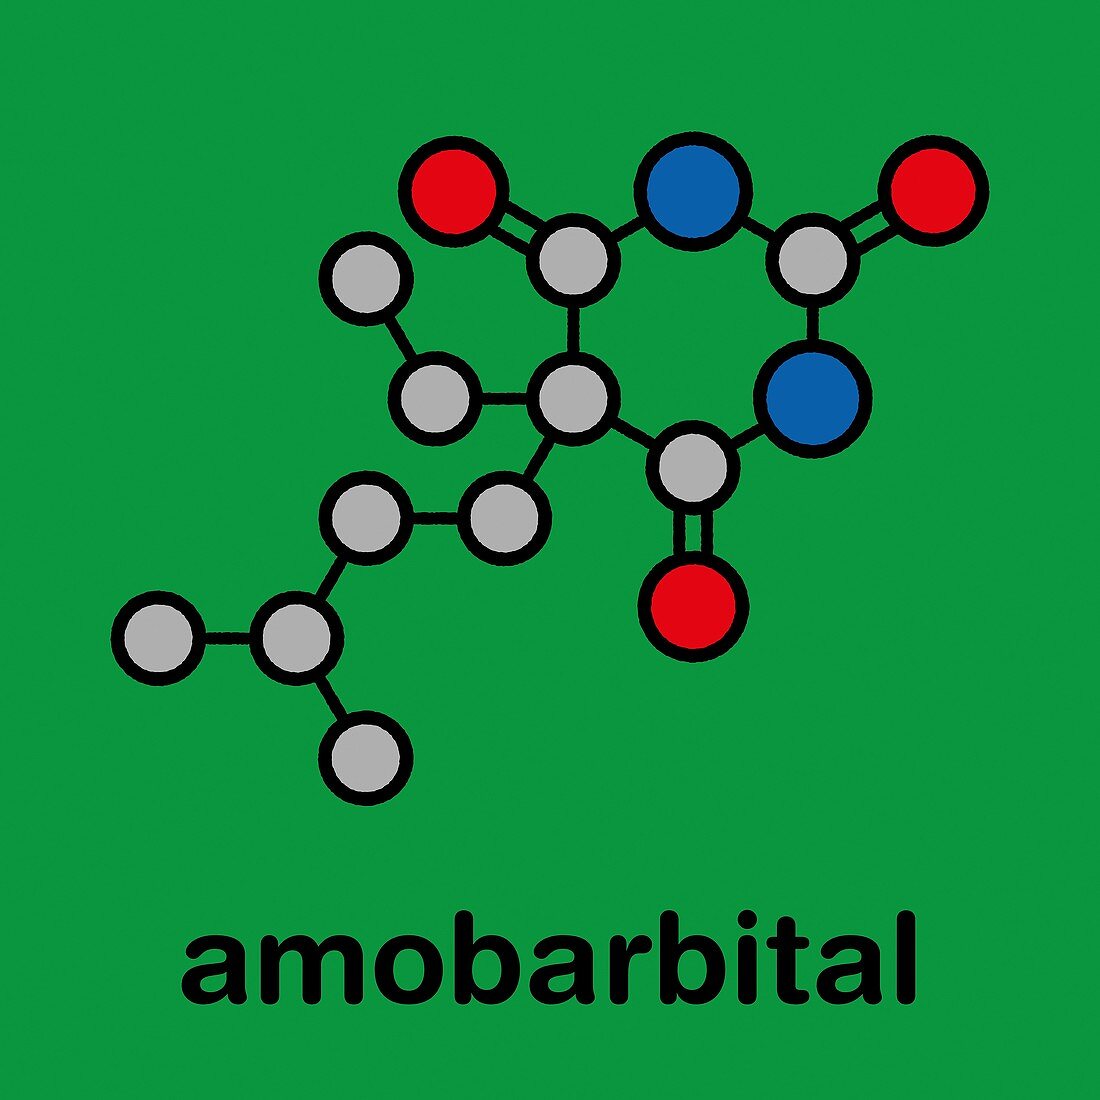 Amobarbital barbiturate sedative, illustration